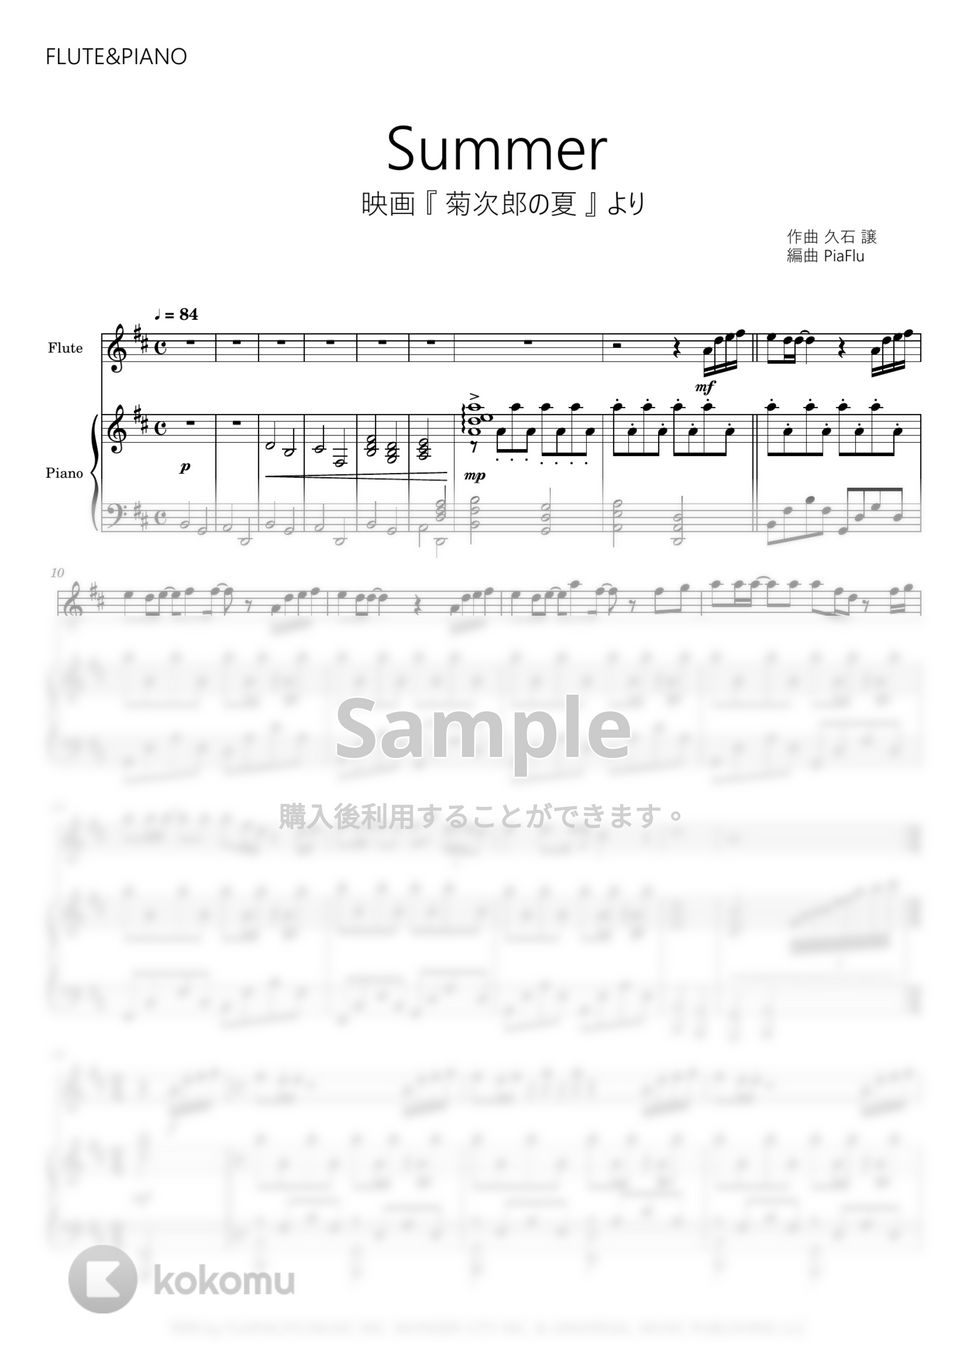 久石譲 - Summer / 映画『菊次郎の夏』メインテーマ (フルート&ピアノ伴奏) by PiaFlu